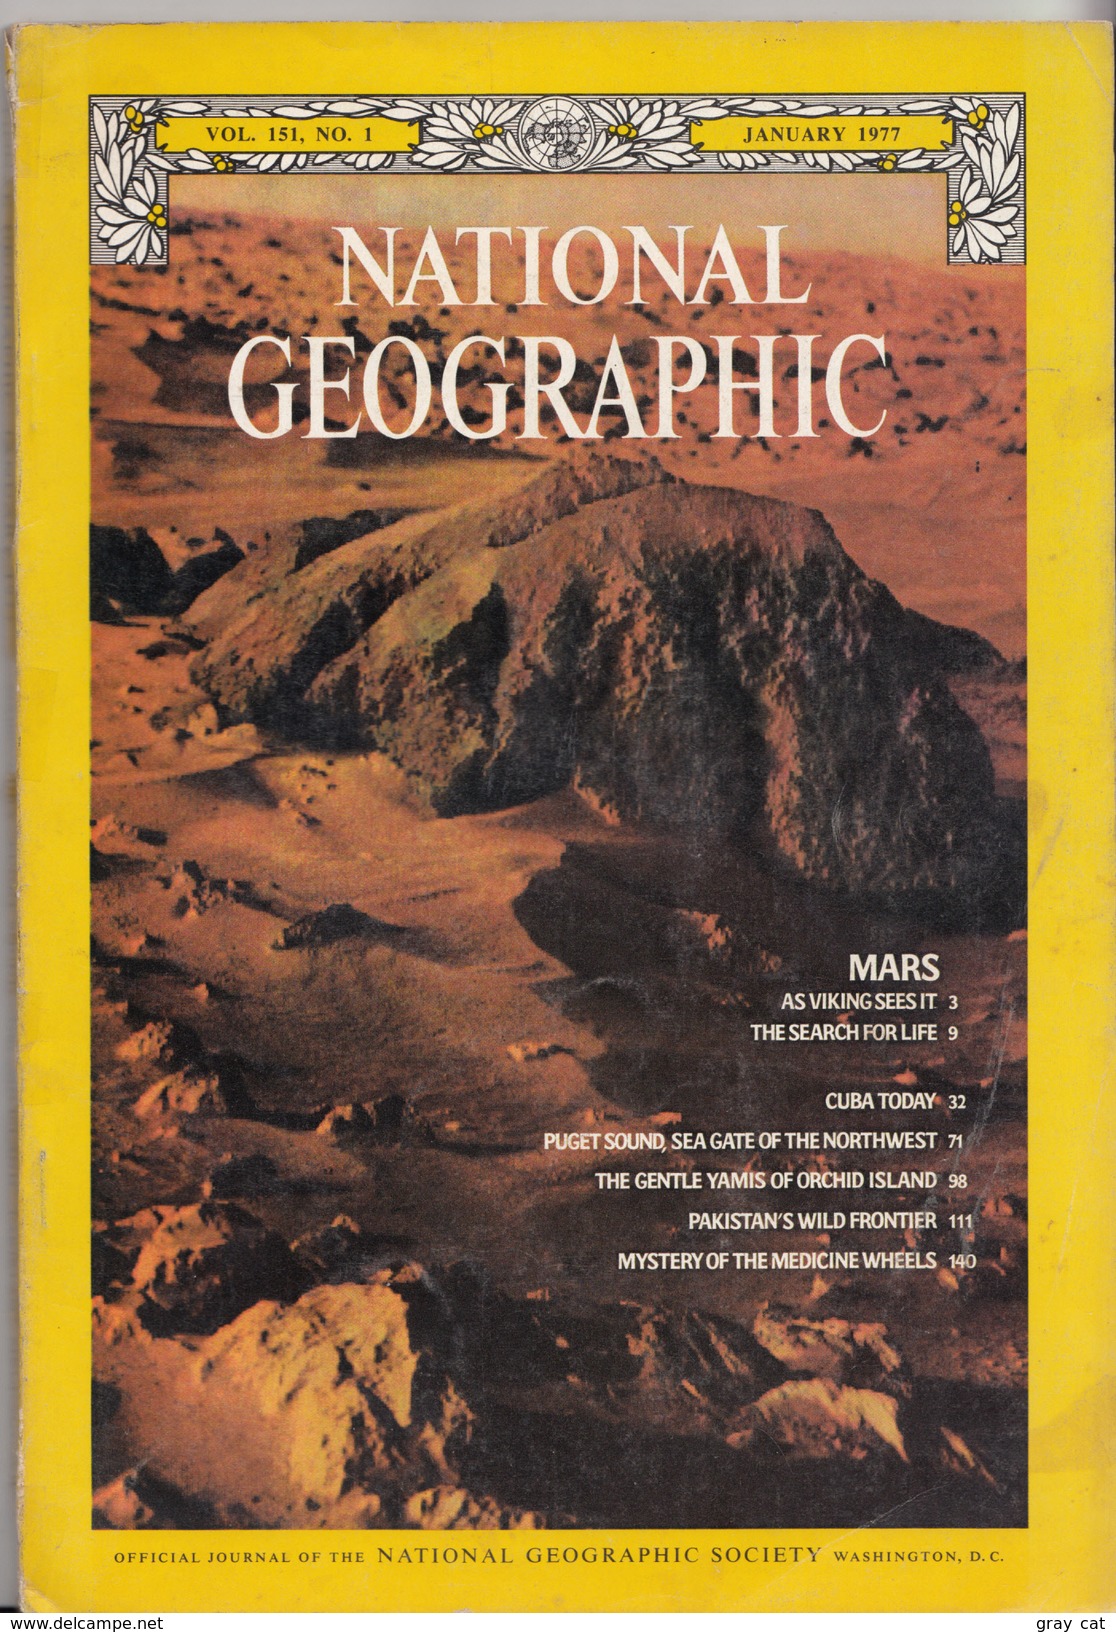 National Geographic Magazine Vol. 151, No. 1, January 1977 - Viajes/Exploración